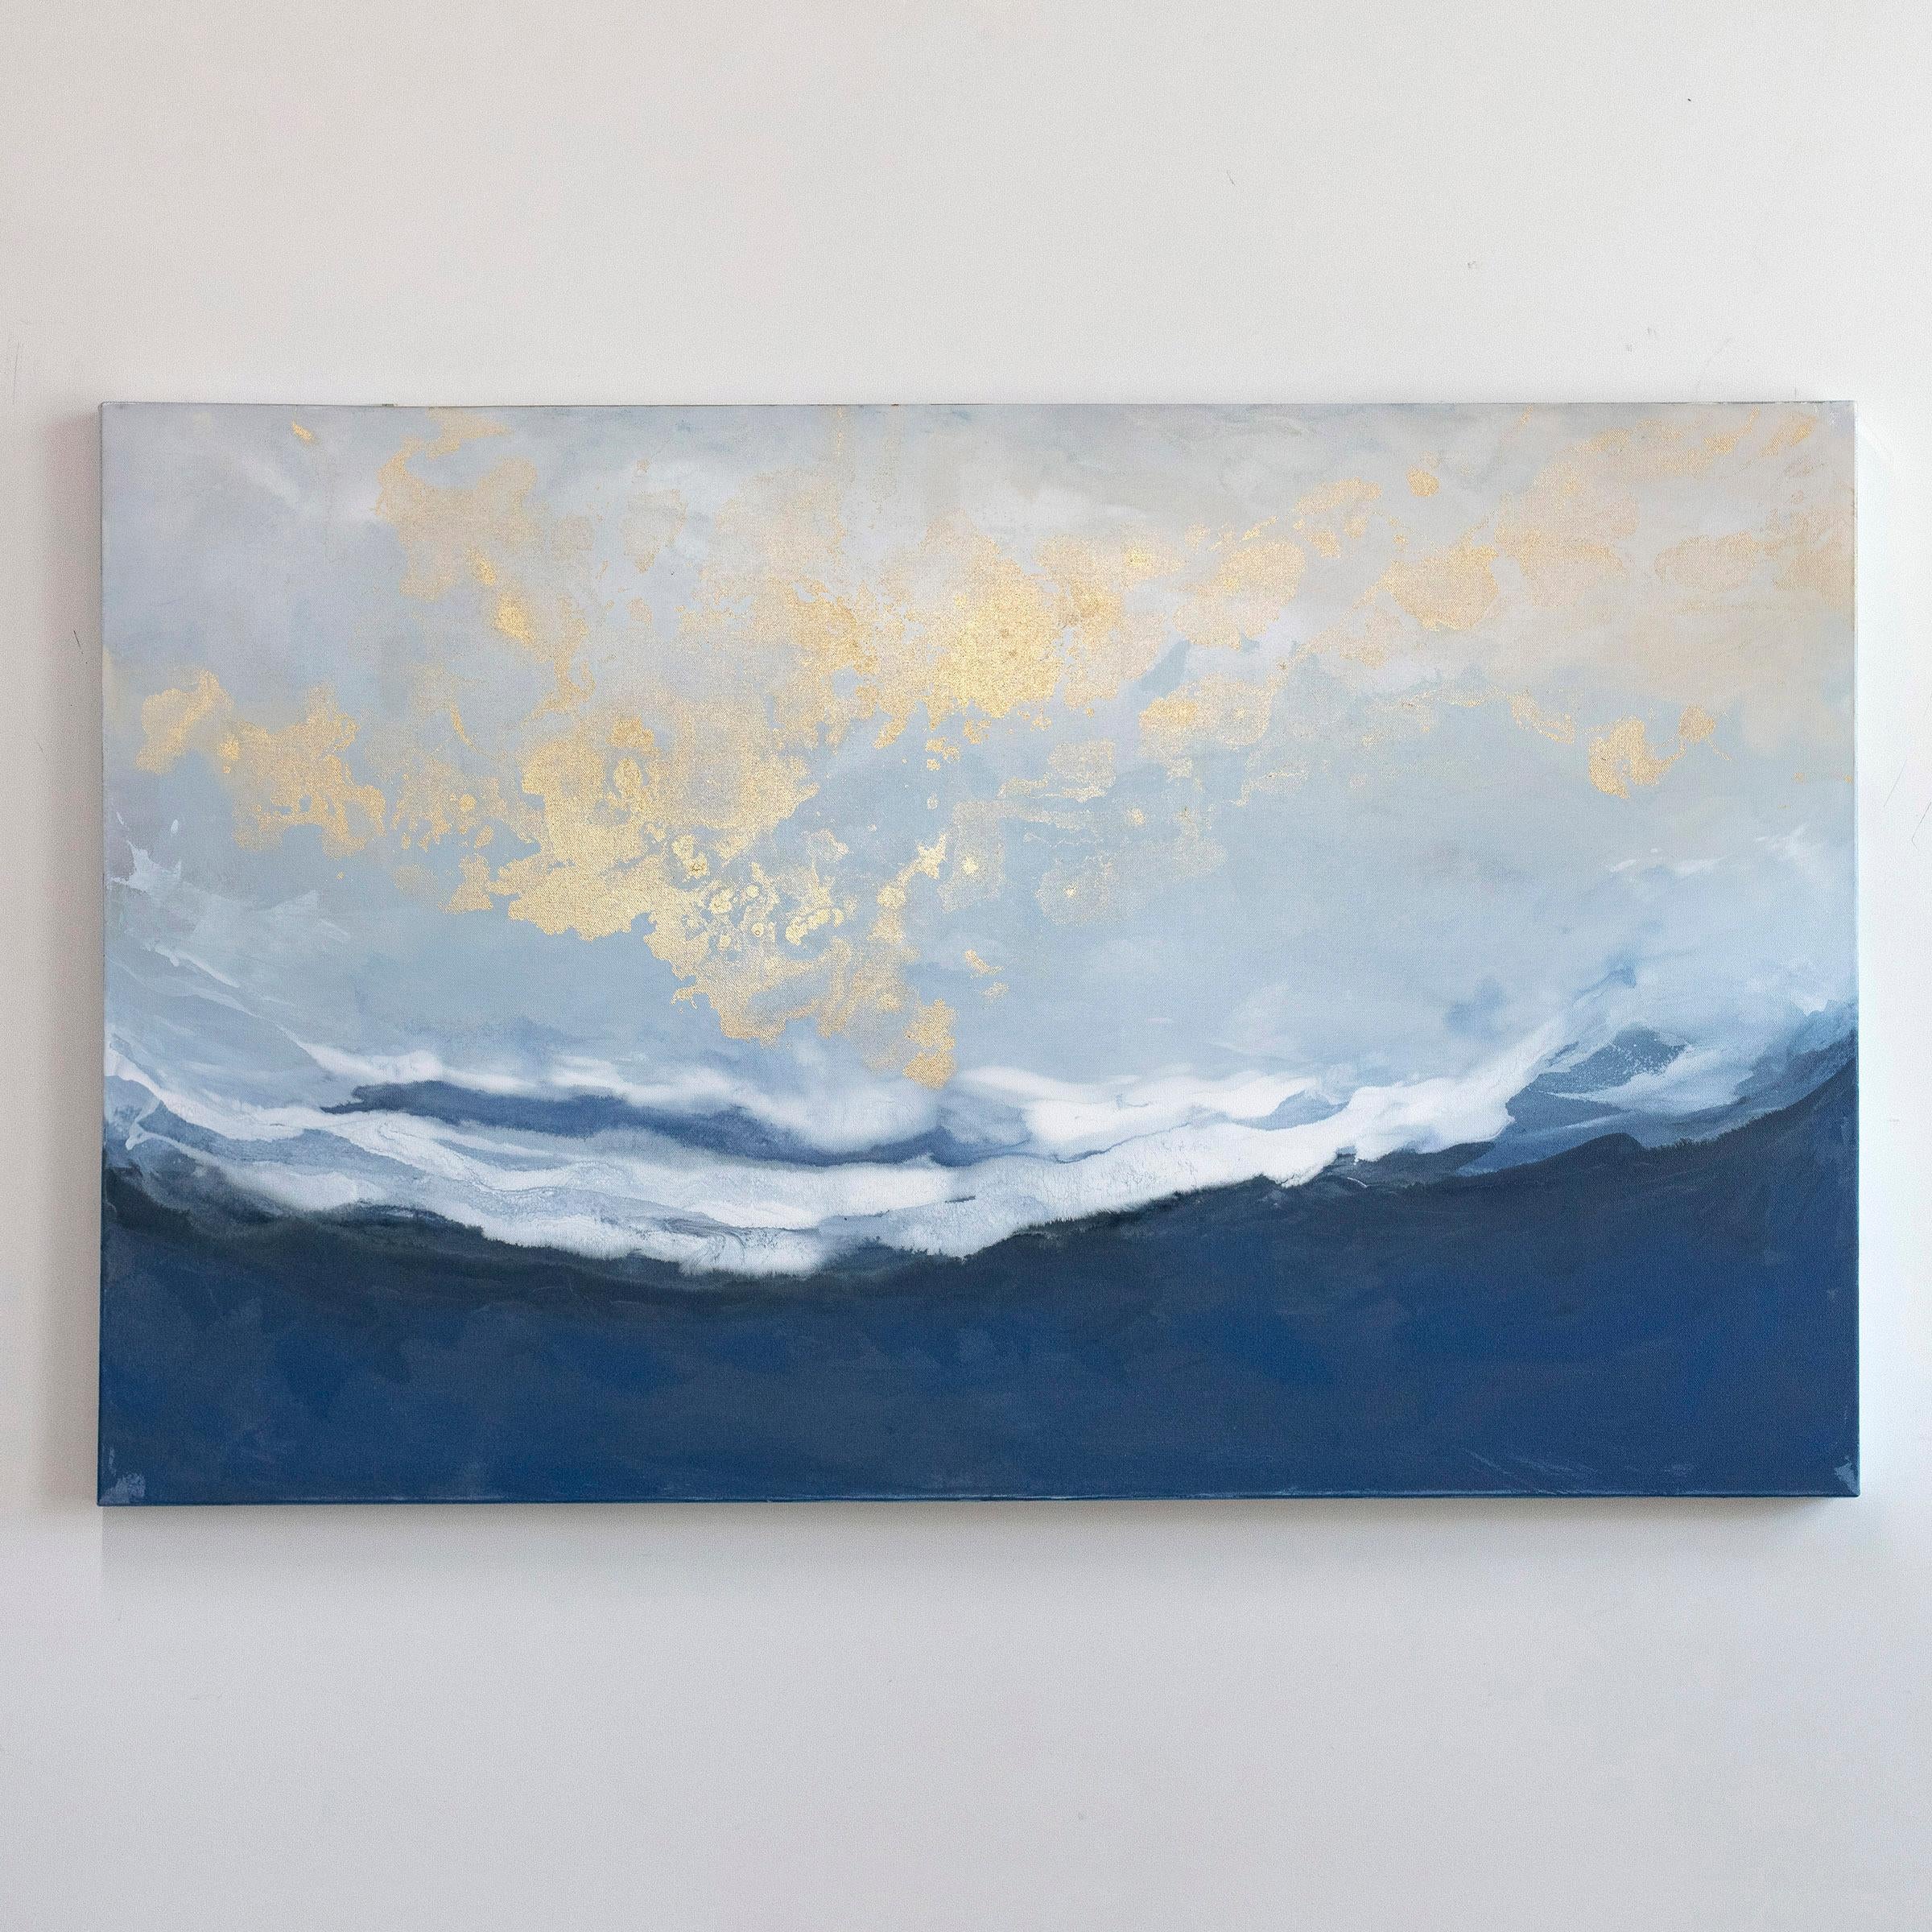 Dieses abstrakte Gemälde von Julia Contacessi zeichnet sich durch eine kühle Farbpalette mit tiefblauen und weißen Tönen und subtilen metallischen Akzenten im oberen Teil der Komposition aus. Das Gemälde ist auf galerieumwickelter Leinwand mit